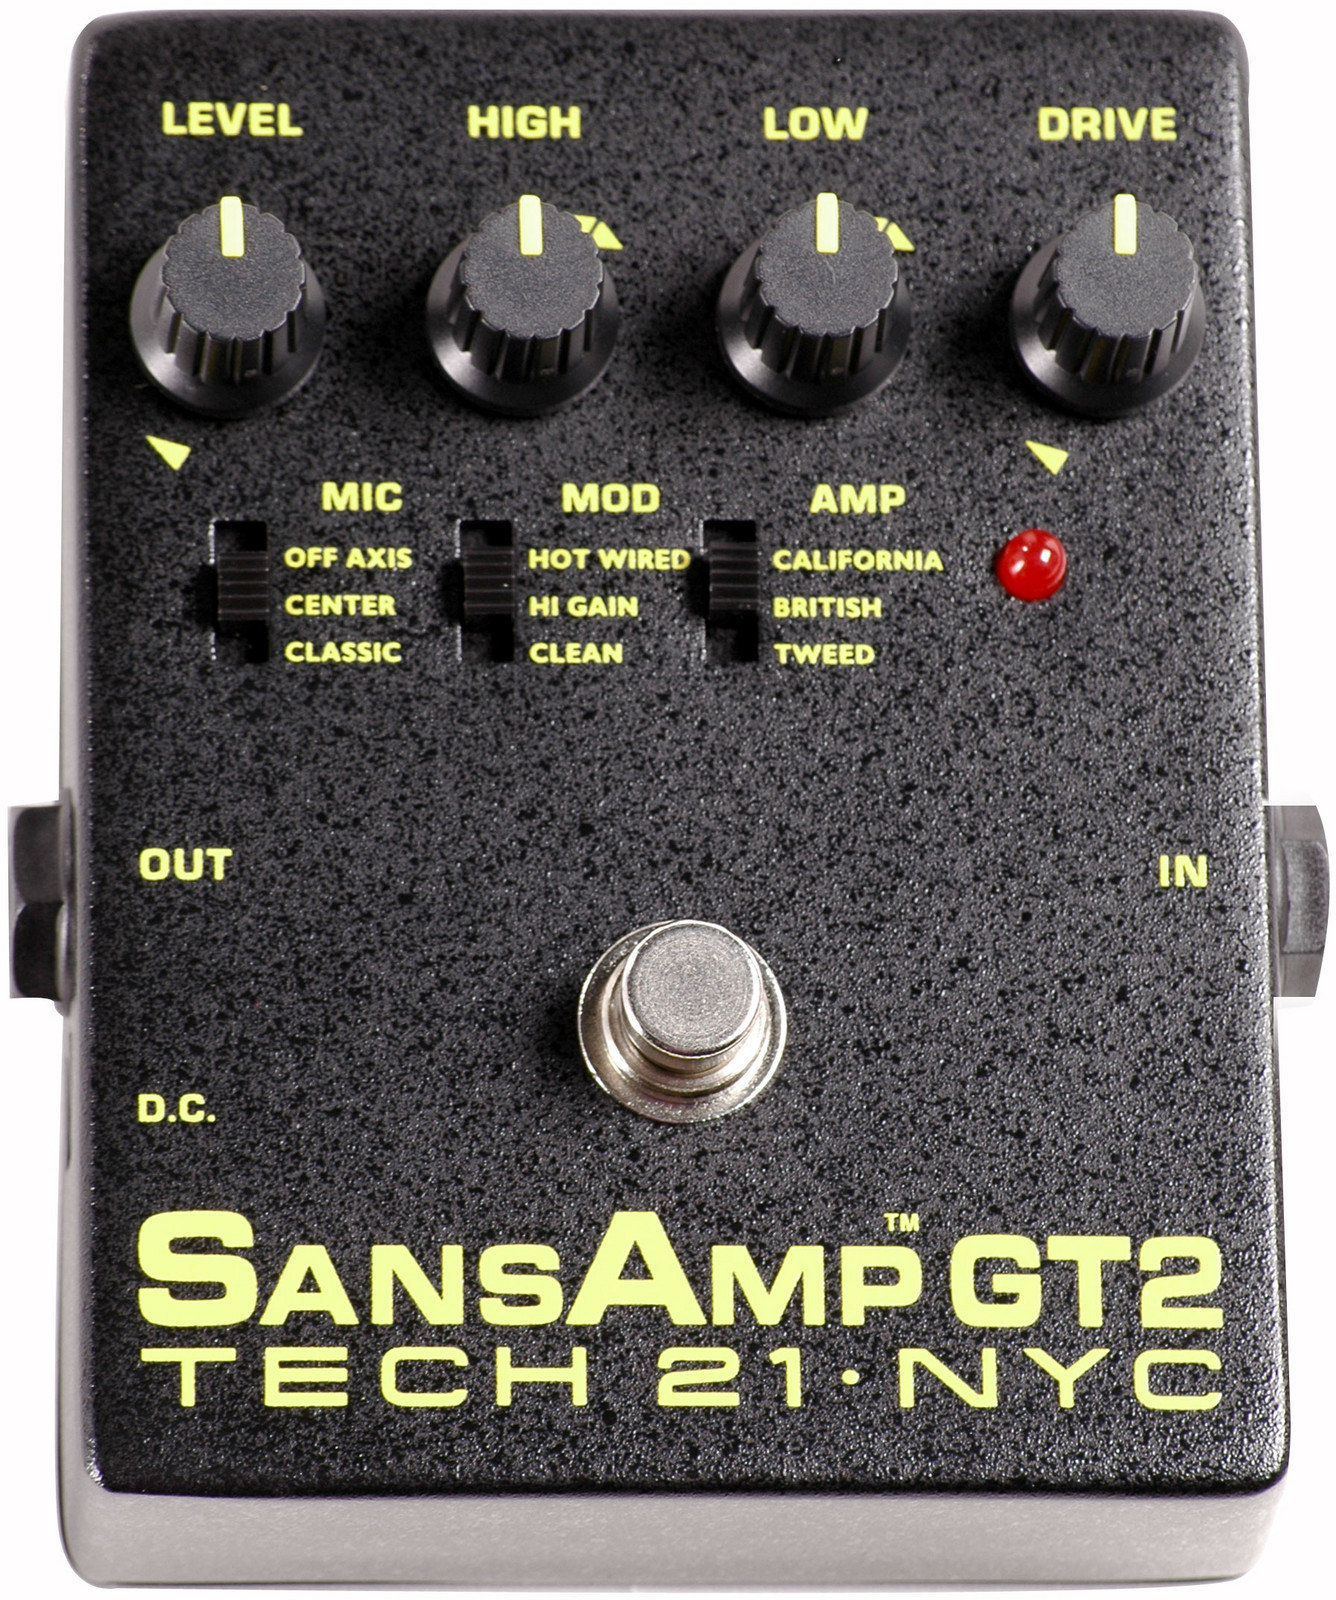 Tech 21 SansAmp GT2 Tech 21